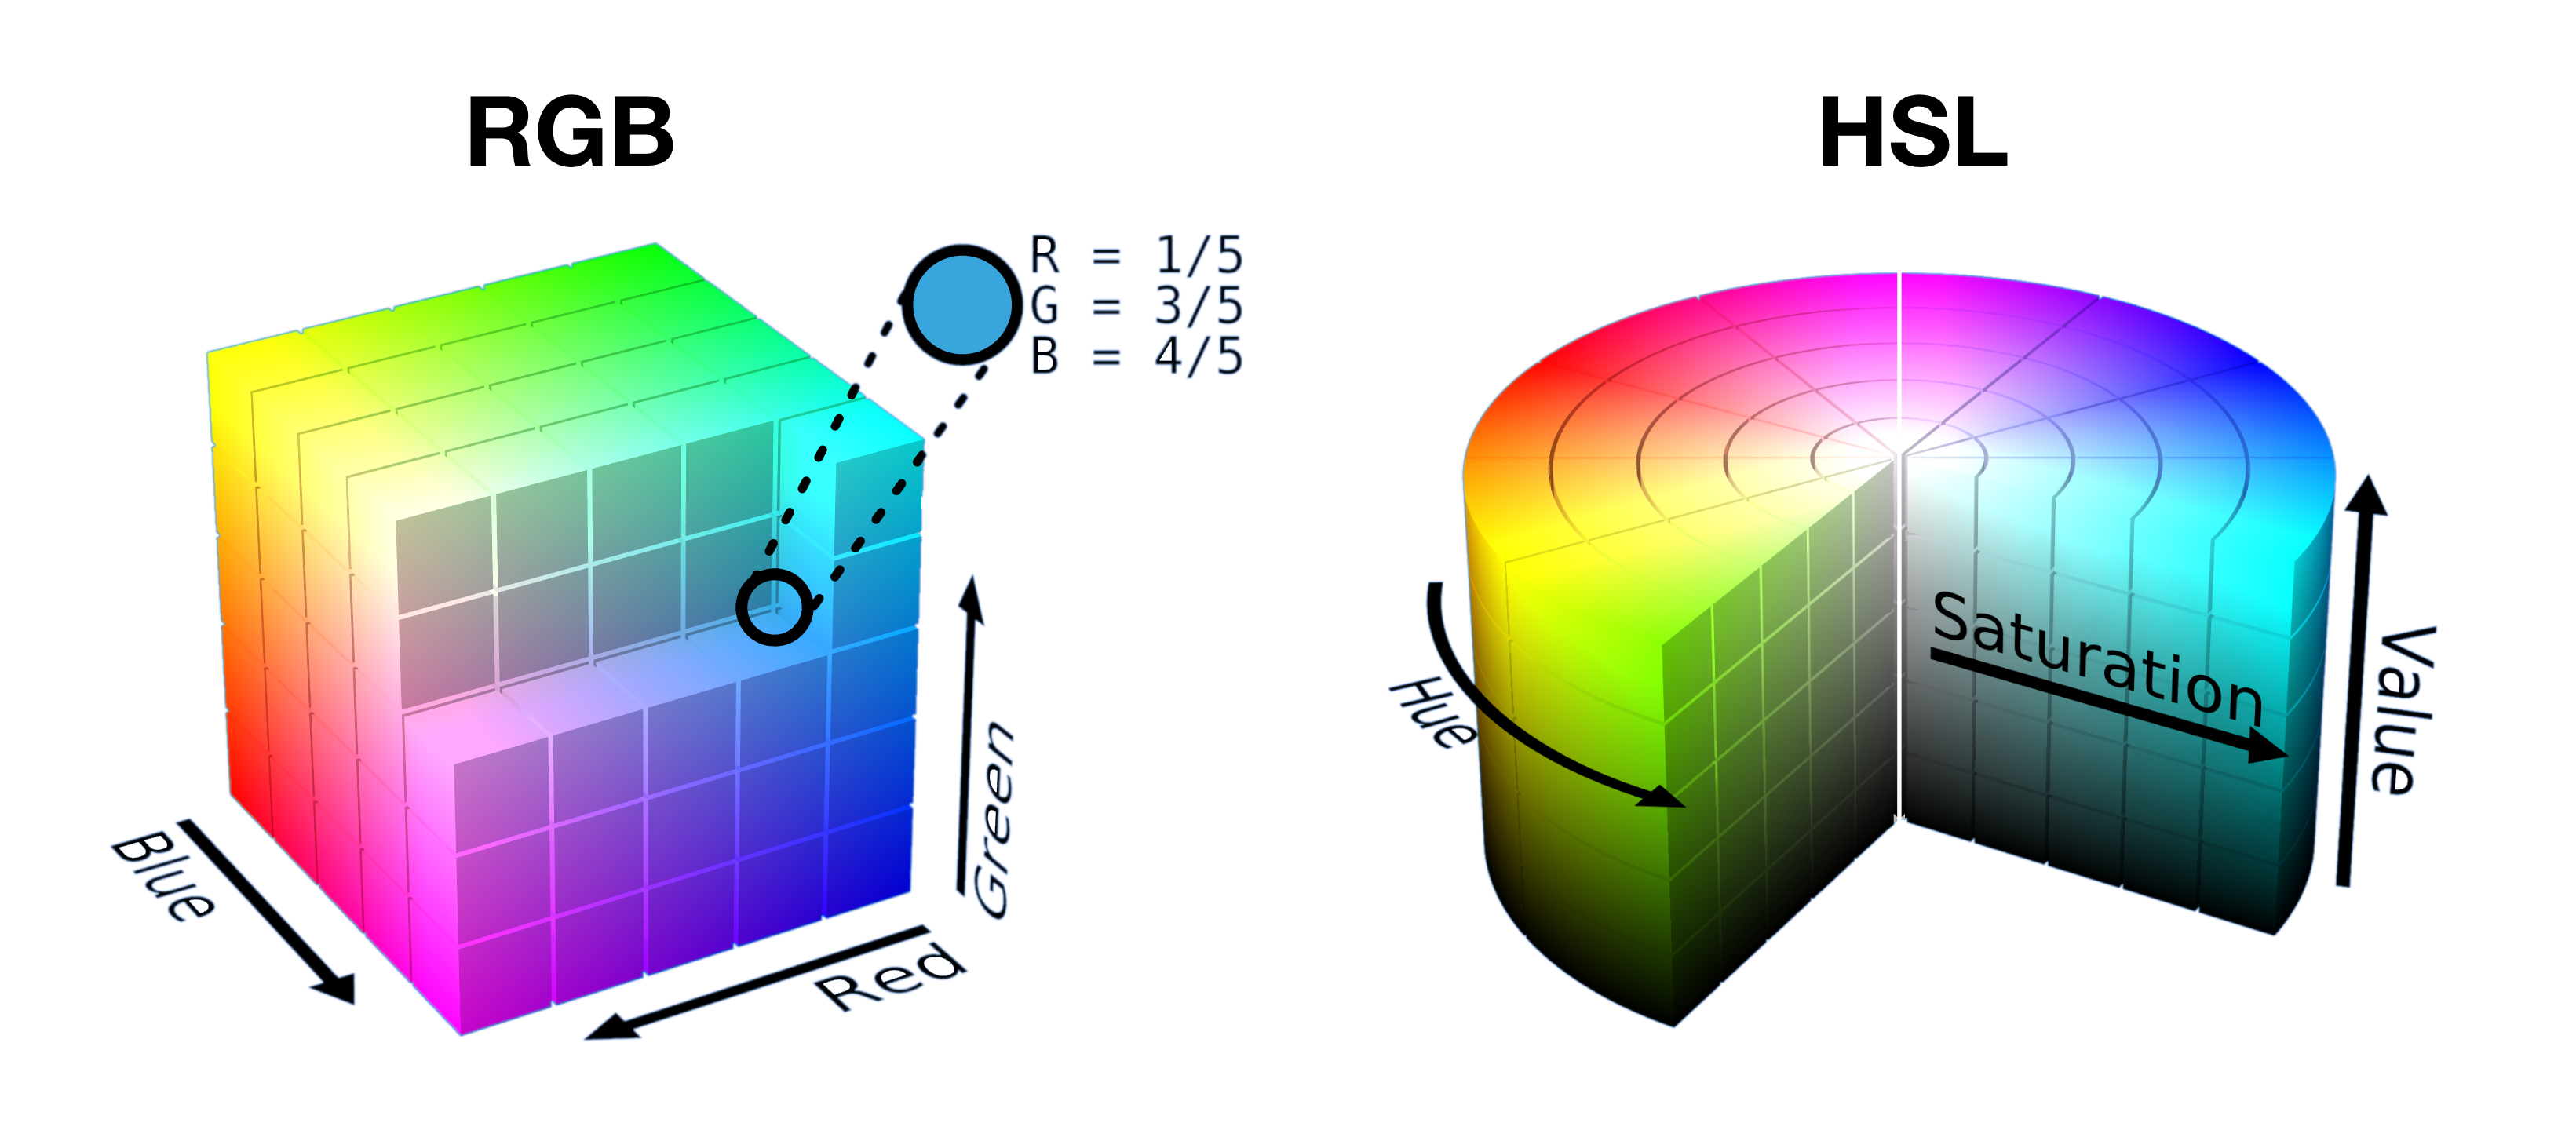 Một hình khối RGB mở một nửa và các lát cắt thành hình trụ HSL được hiển thị cạnh nhau để cho thấy cách các màu sắc được kết hợp thành một hình dạng trong mỗi không gian.